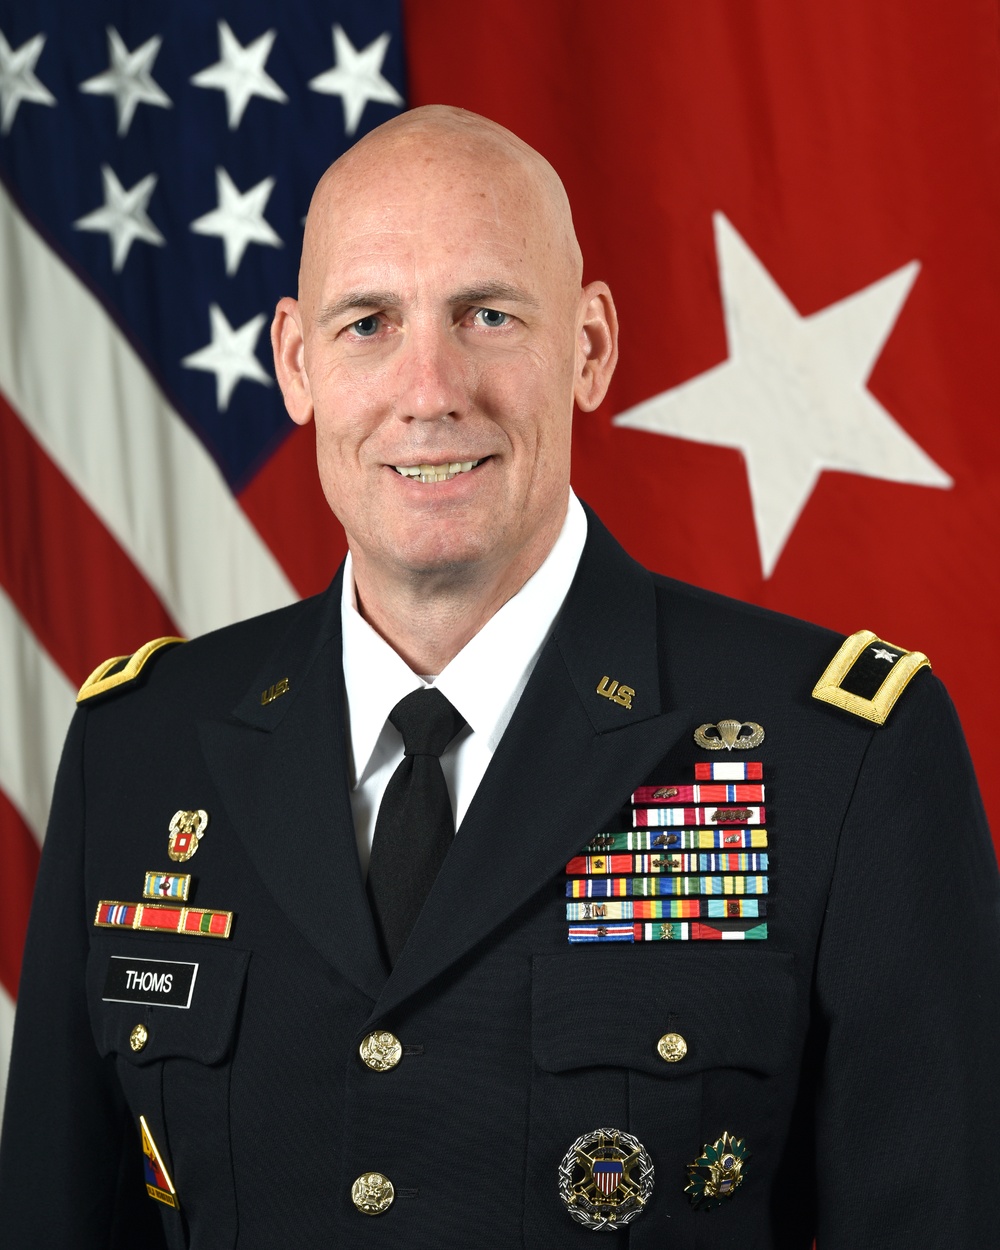 U.S. Army Brig. Gen. Lawrence Thoms